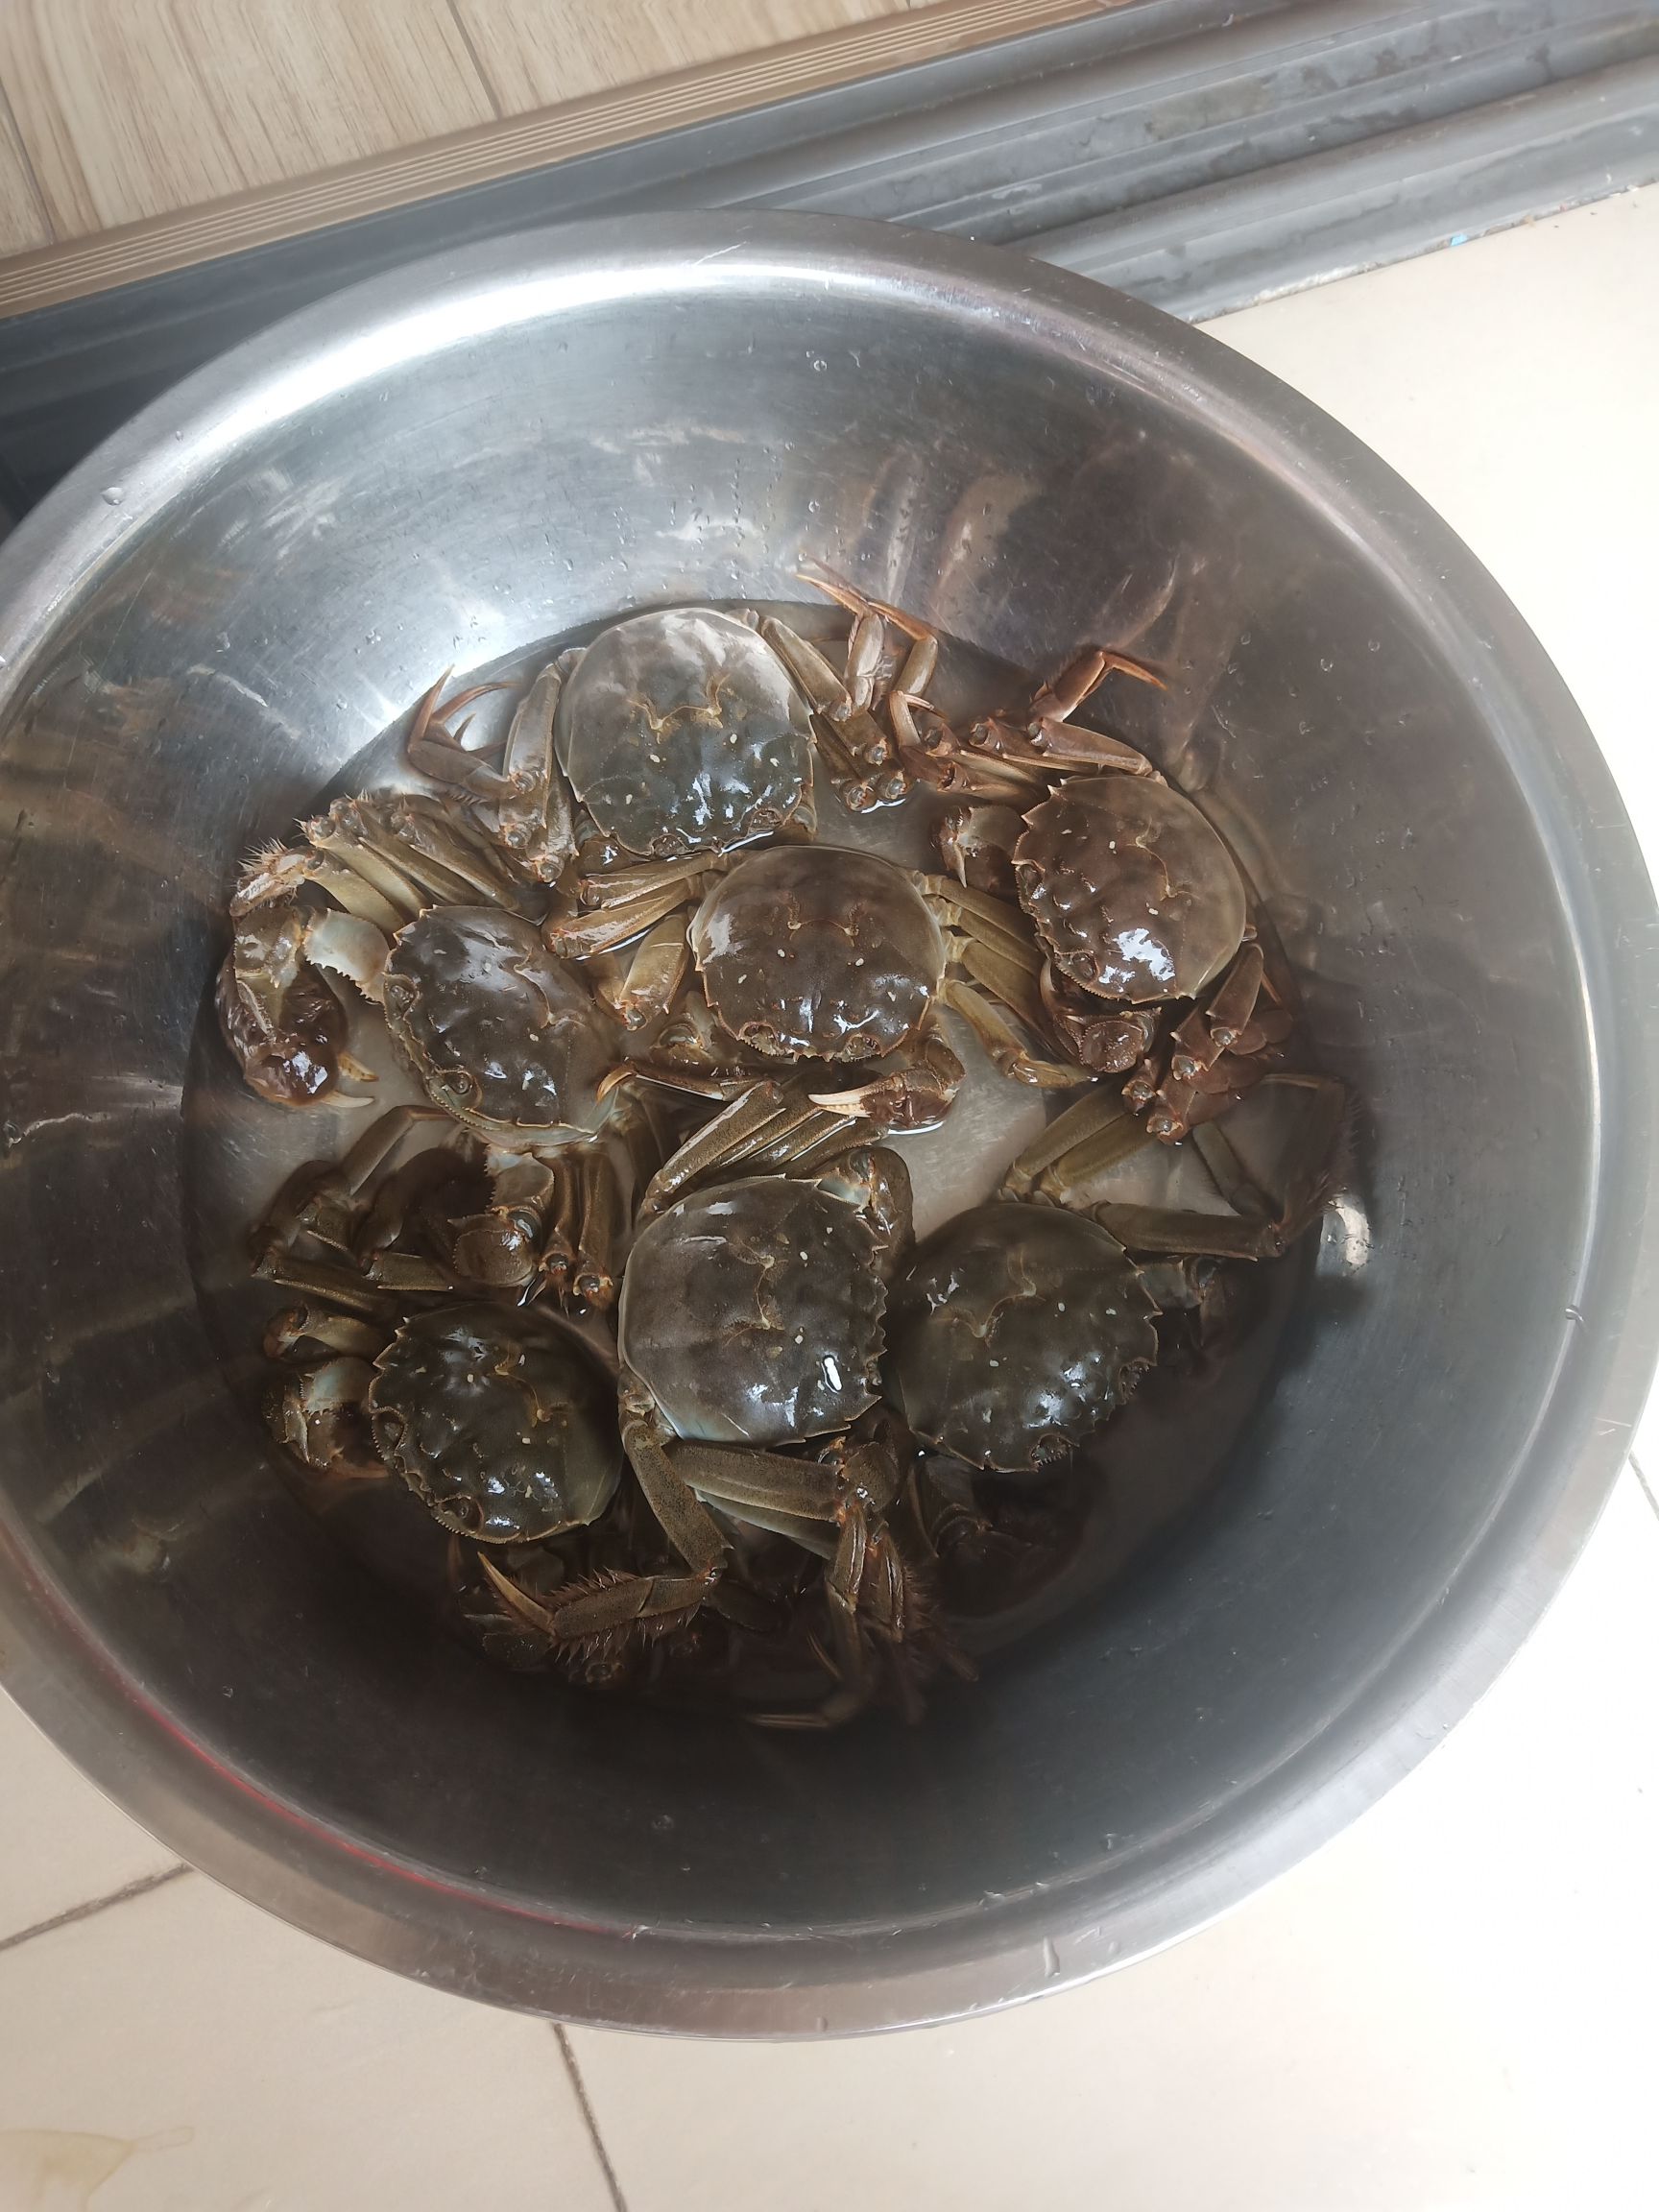 Hairy Crab Congee recipe